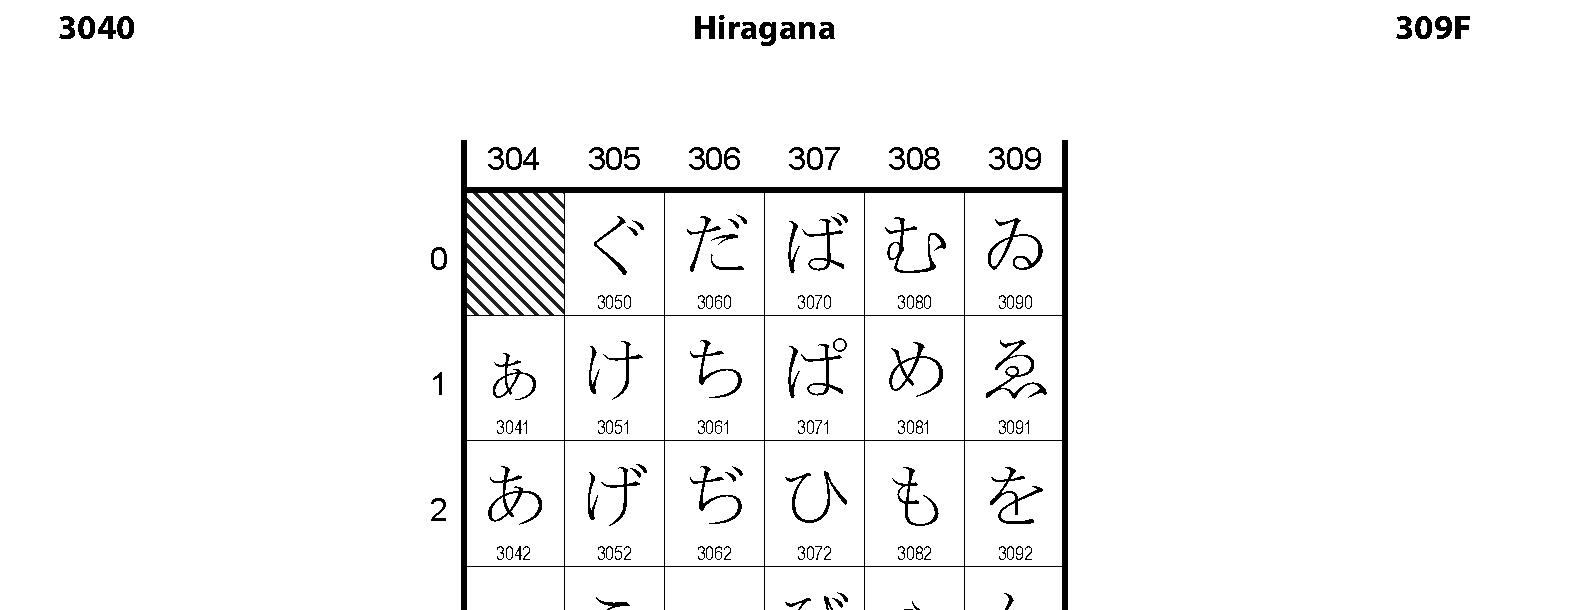 Unicode - Hiragana